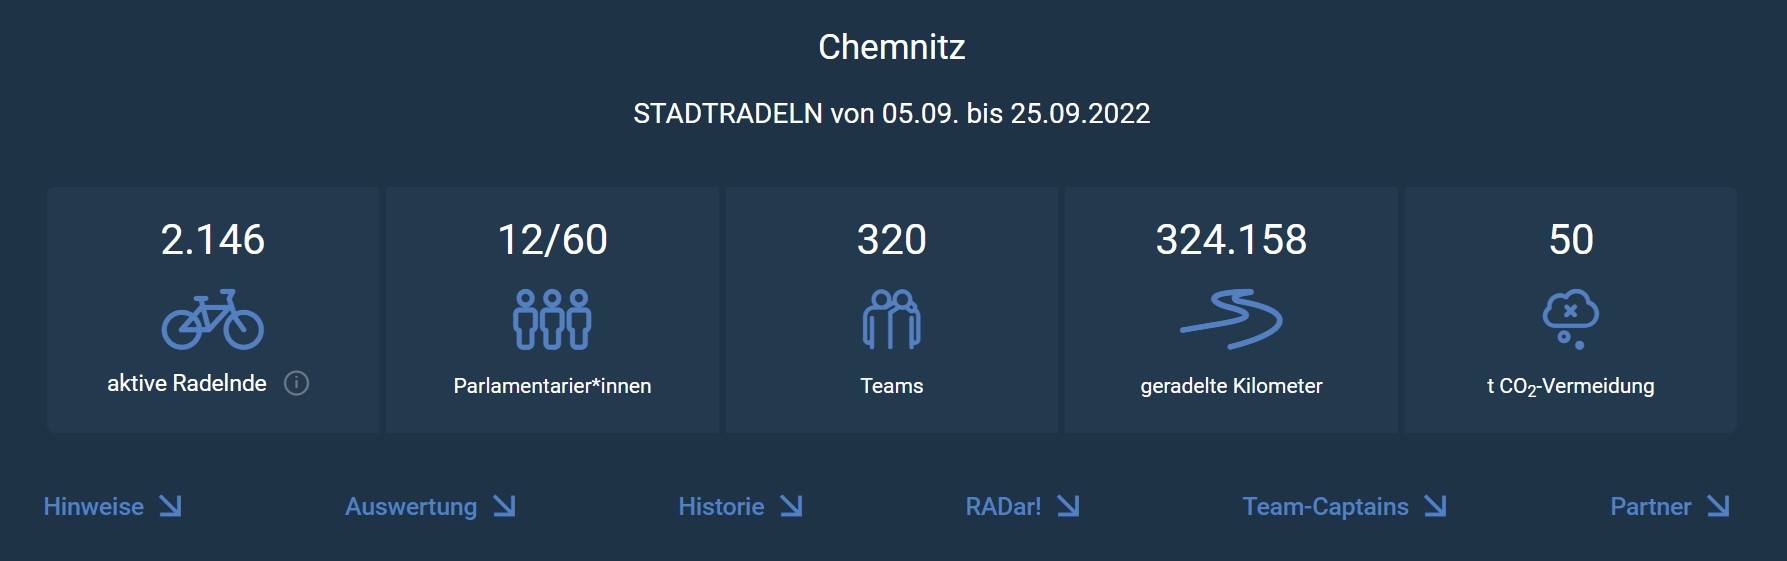 Stadtradeln Ergebnisse für Chemnitz